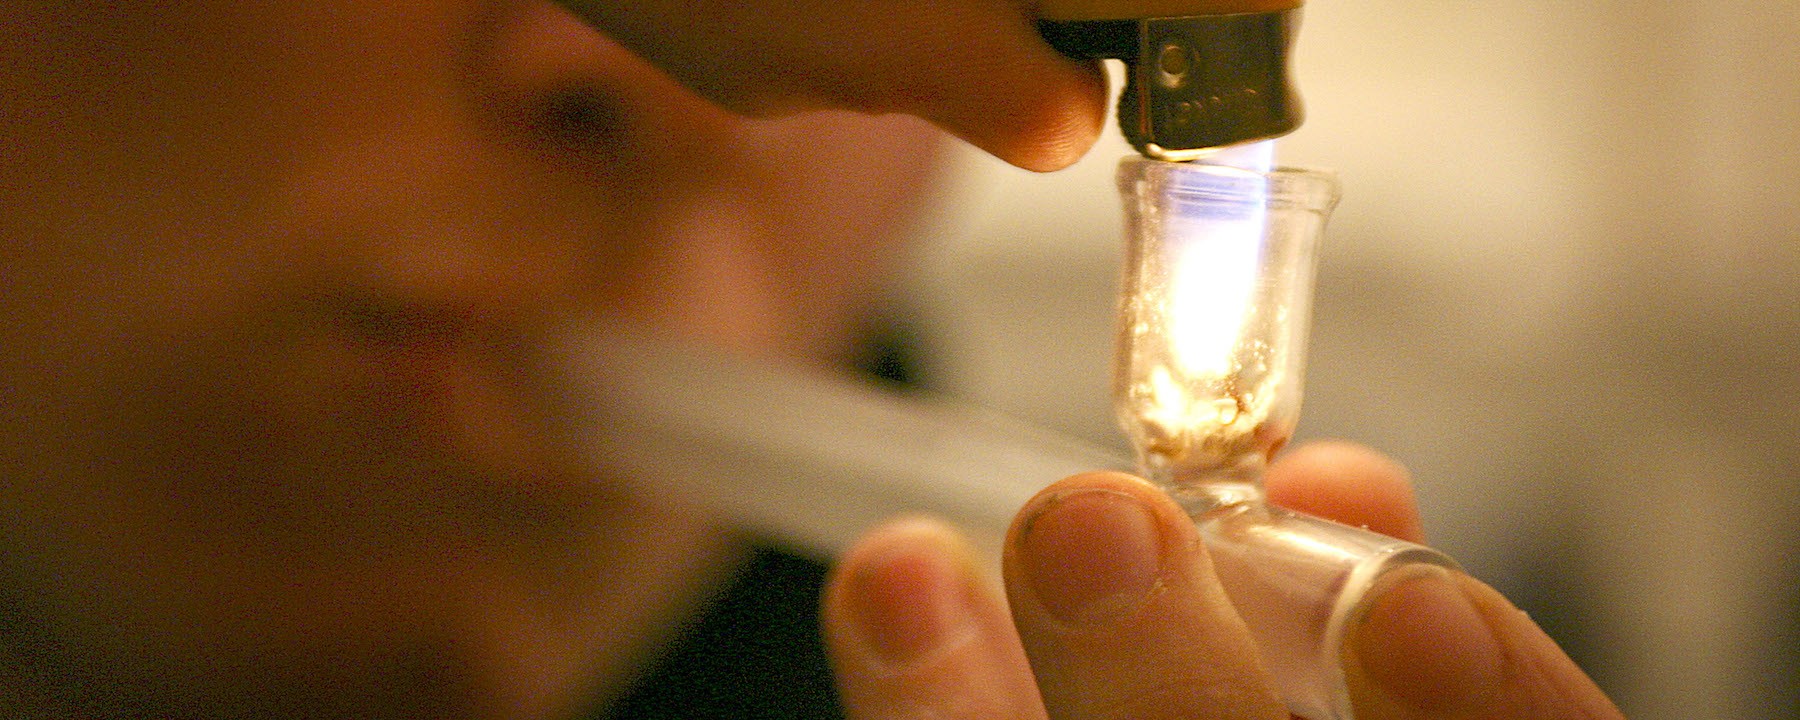 Наркотик crack как употребление конопли влияет на организм человека